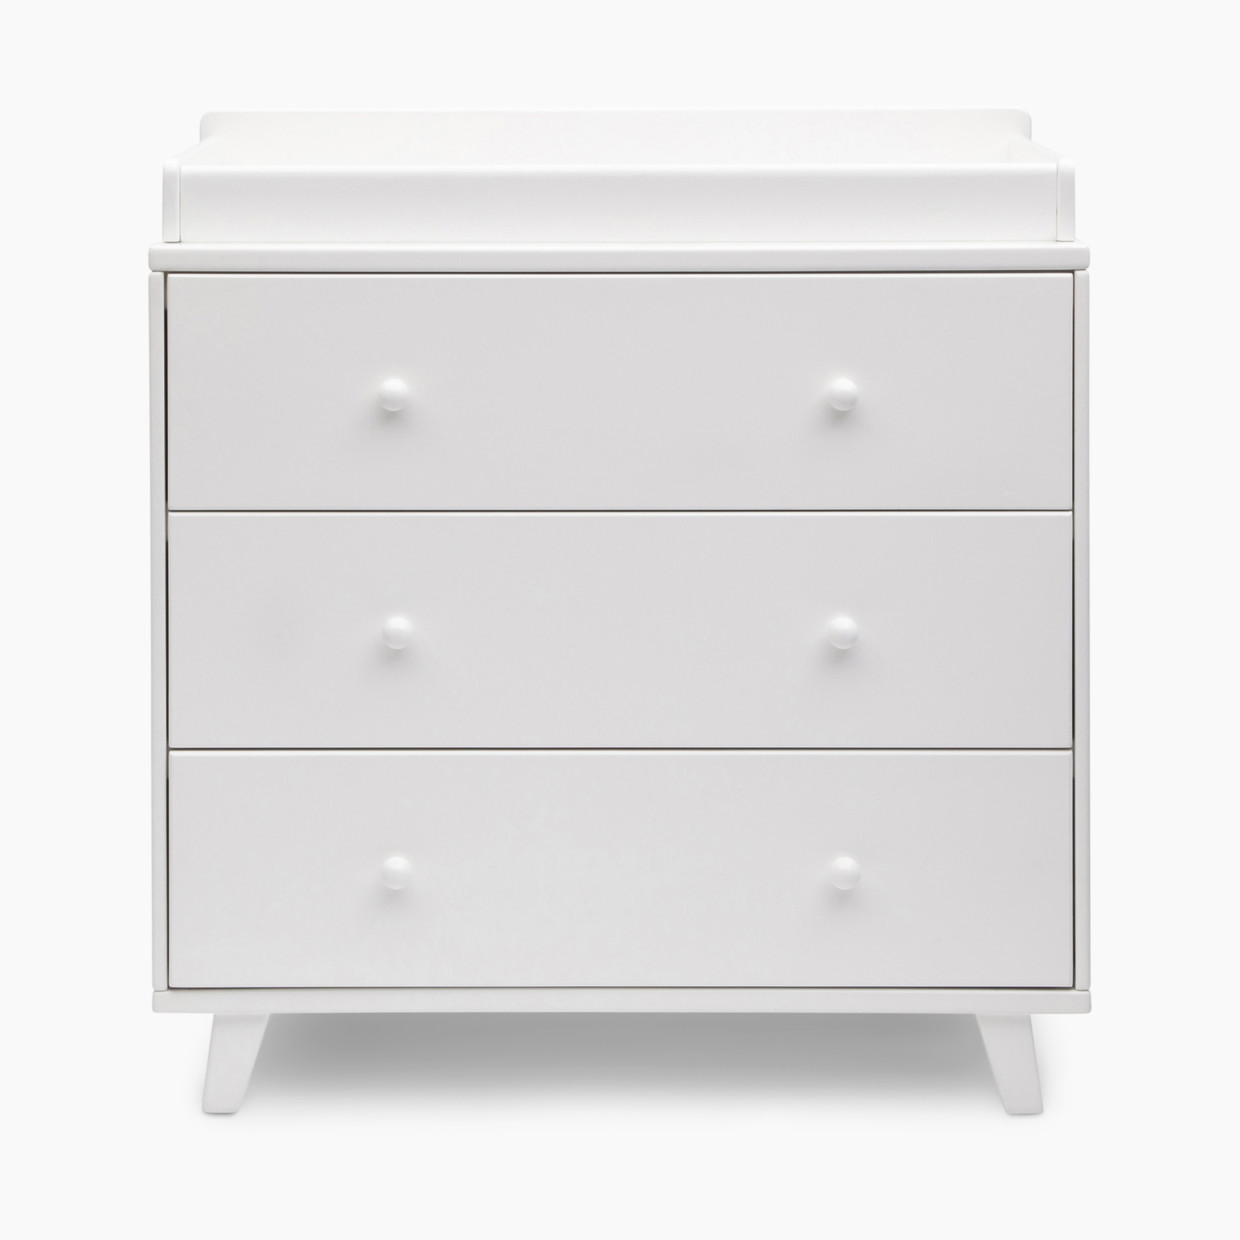 Delta Children Ava 3 Drawer Dresser with Changing Top - White.